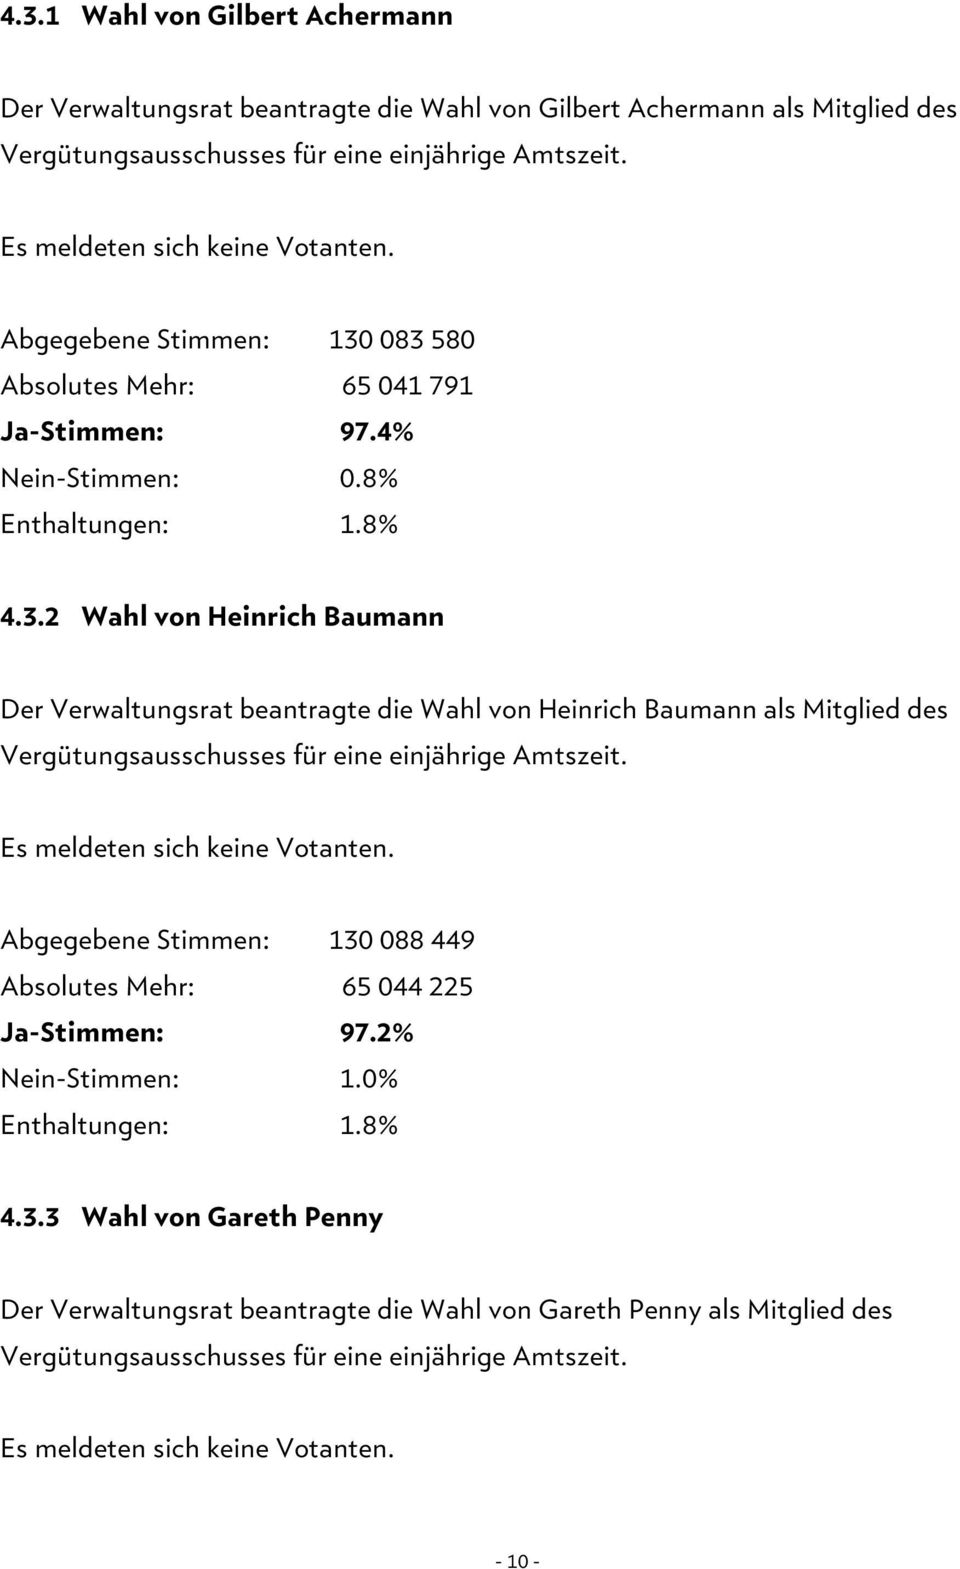 083 580 Absolutes Mehr: 65 041 791 Ja-Stimmen: 97.4% Nein-Stimmen: 0.8% 4.3.2 Wahl von Heinrich Baumann Der Verwaltungsrat beantragte die Wahl von Heinrich Baumann als Mitglied des Vergütungsausschusses für eine einjährige Amtszeit.